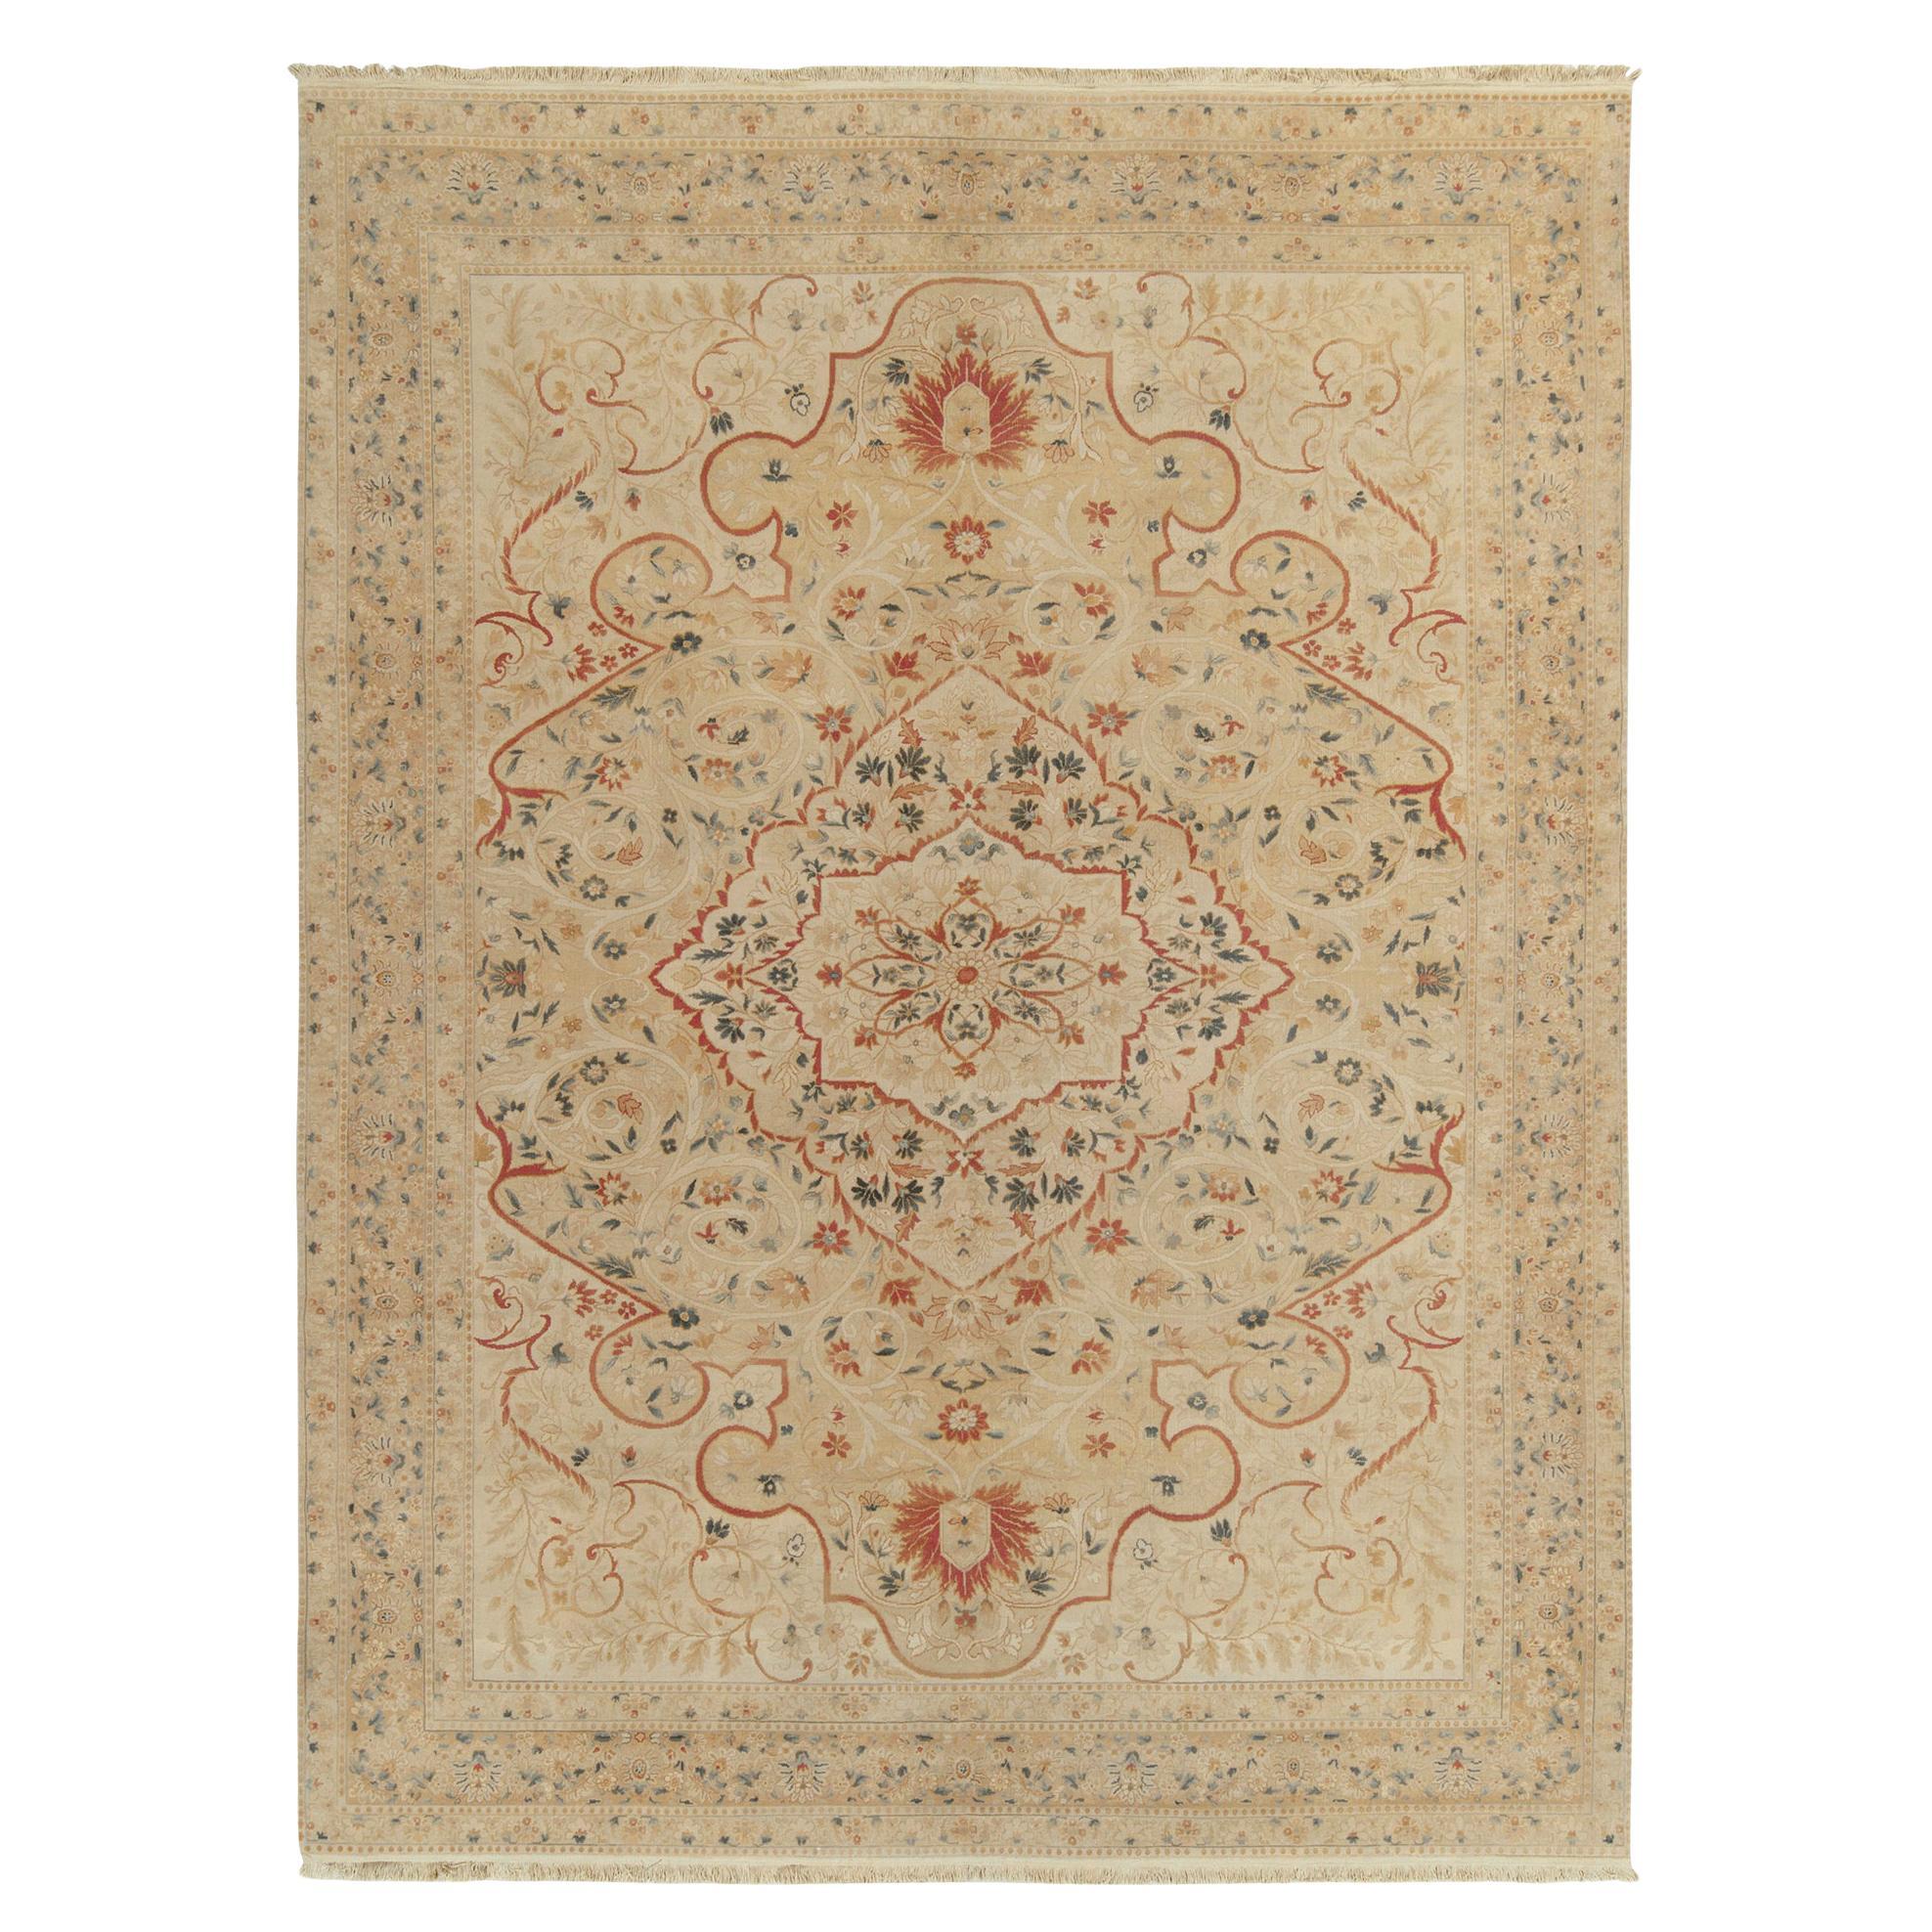 Klassischer Teppich & Kelim-Teppich im Tabriz-Stil mit beigem, rotem und grünem Blumenmuster